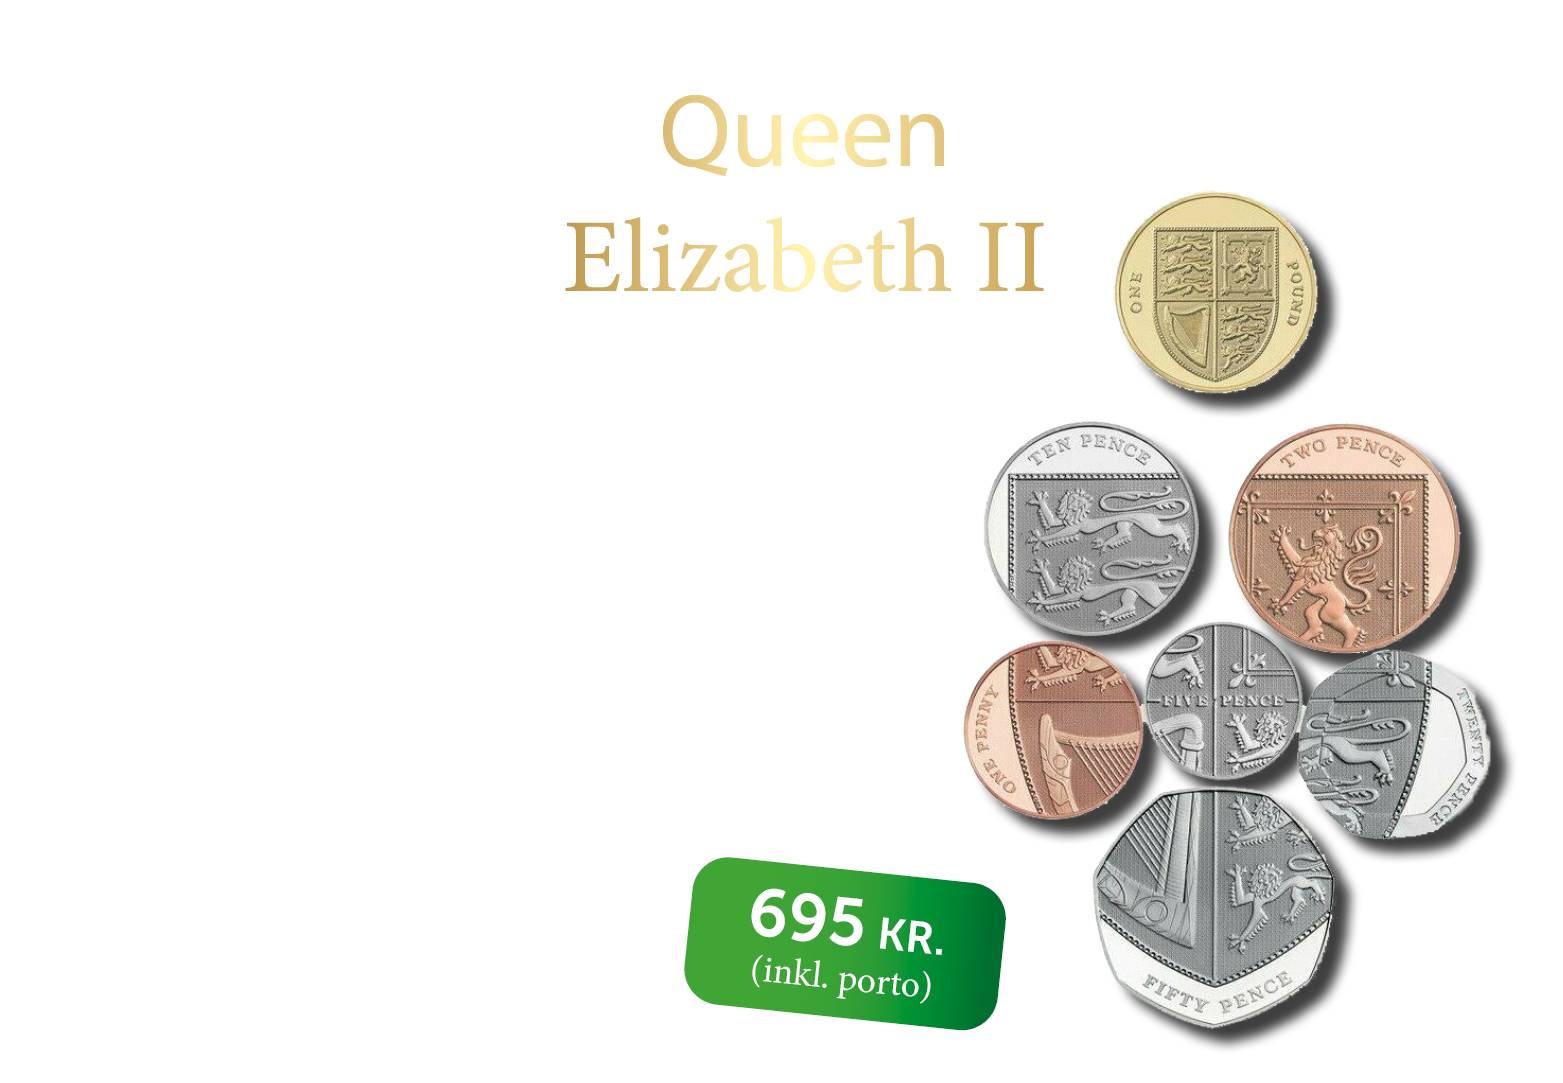 Elizabeth II - "A life for the Crown" eksklusiv møntsæt